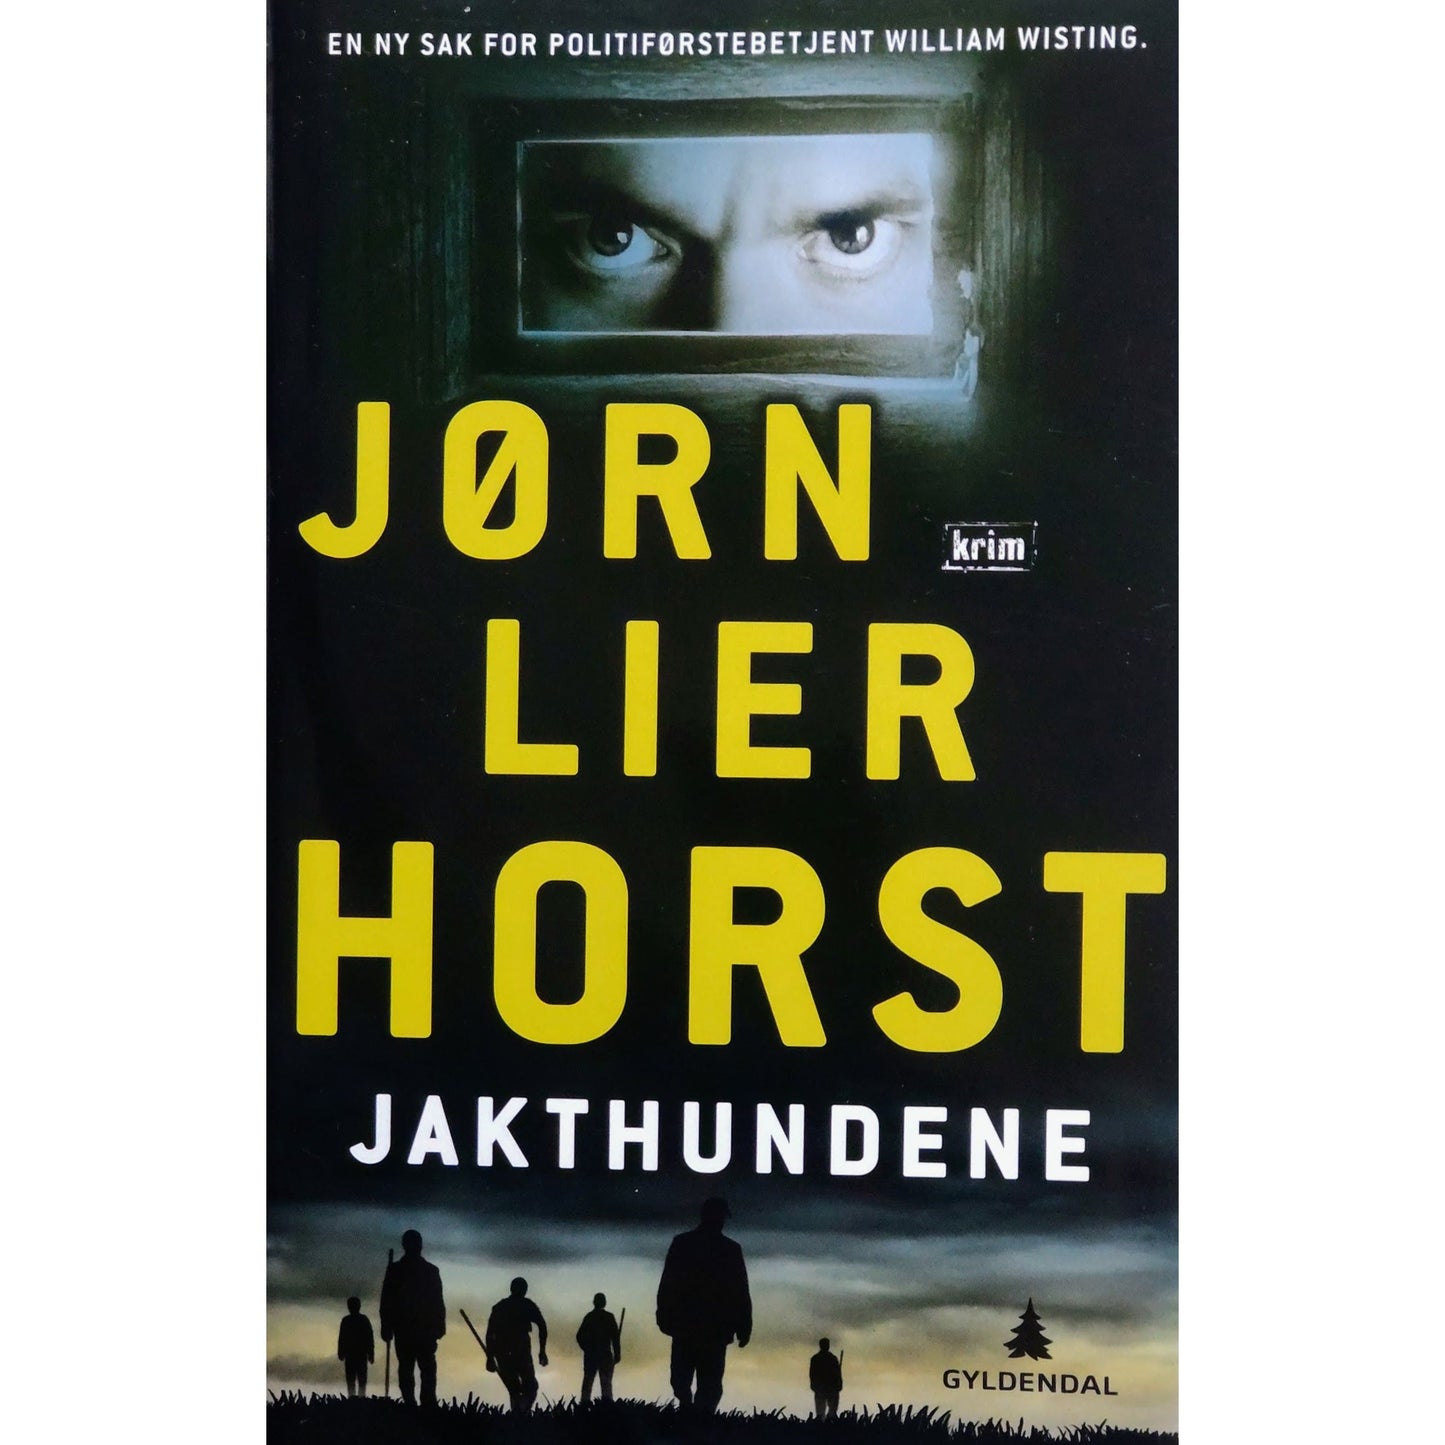 Jakthundene - William Wisting bok 8 - Brukte bøker av Jørn Lier Horst